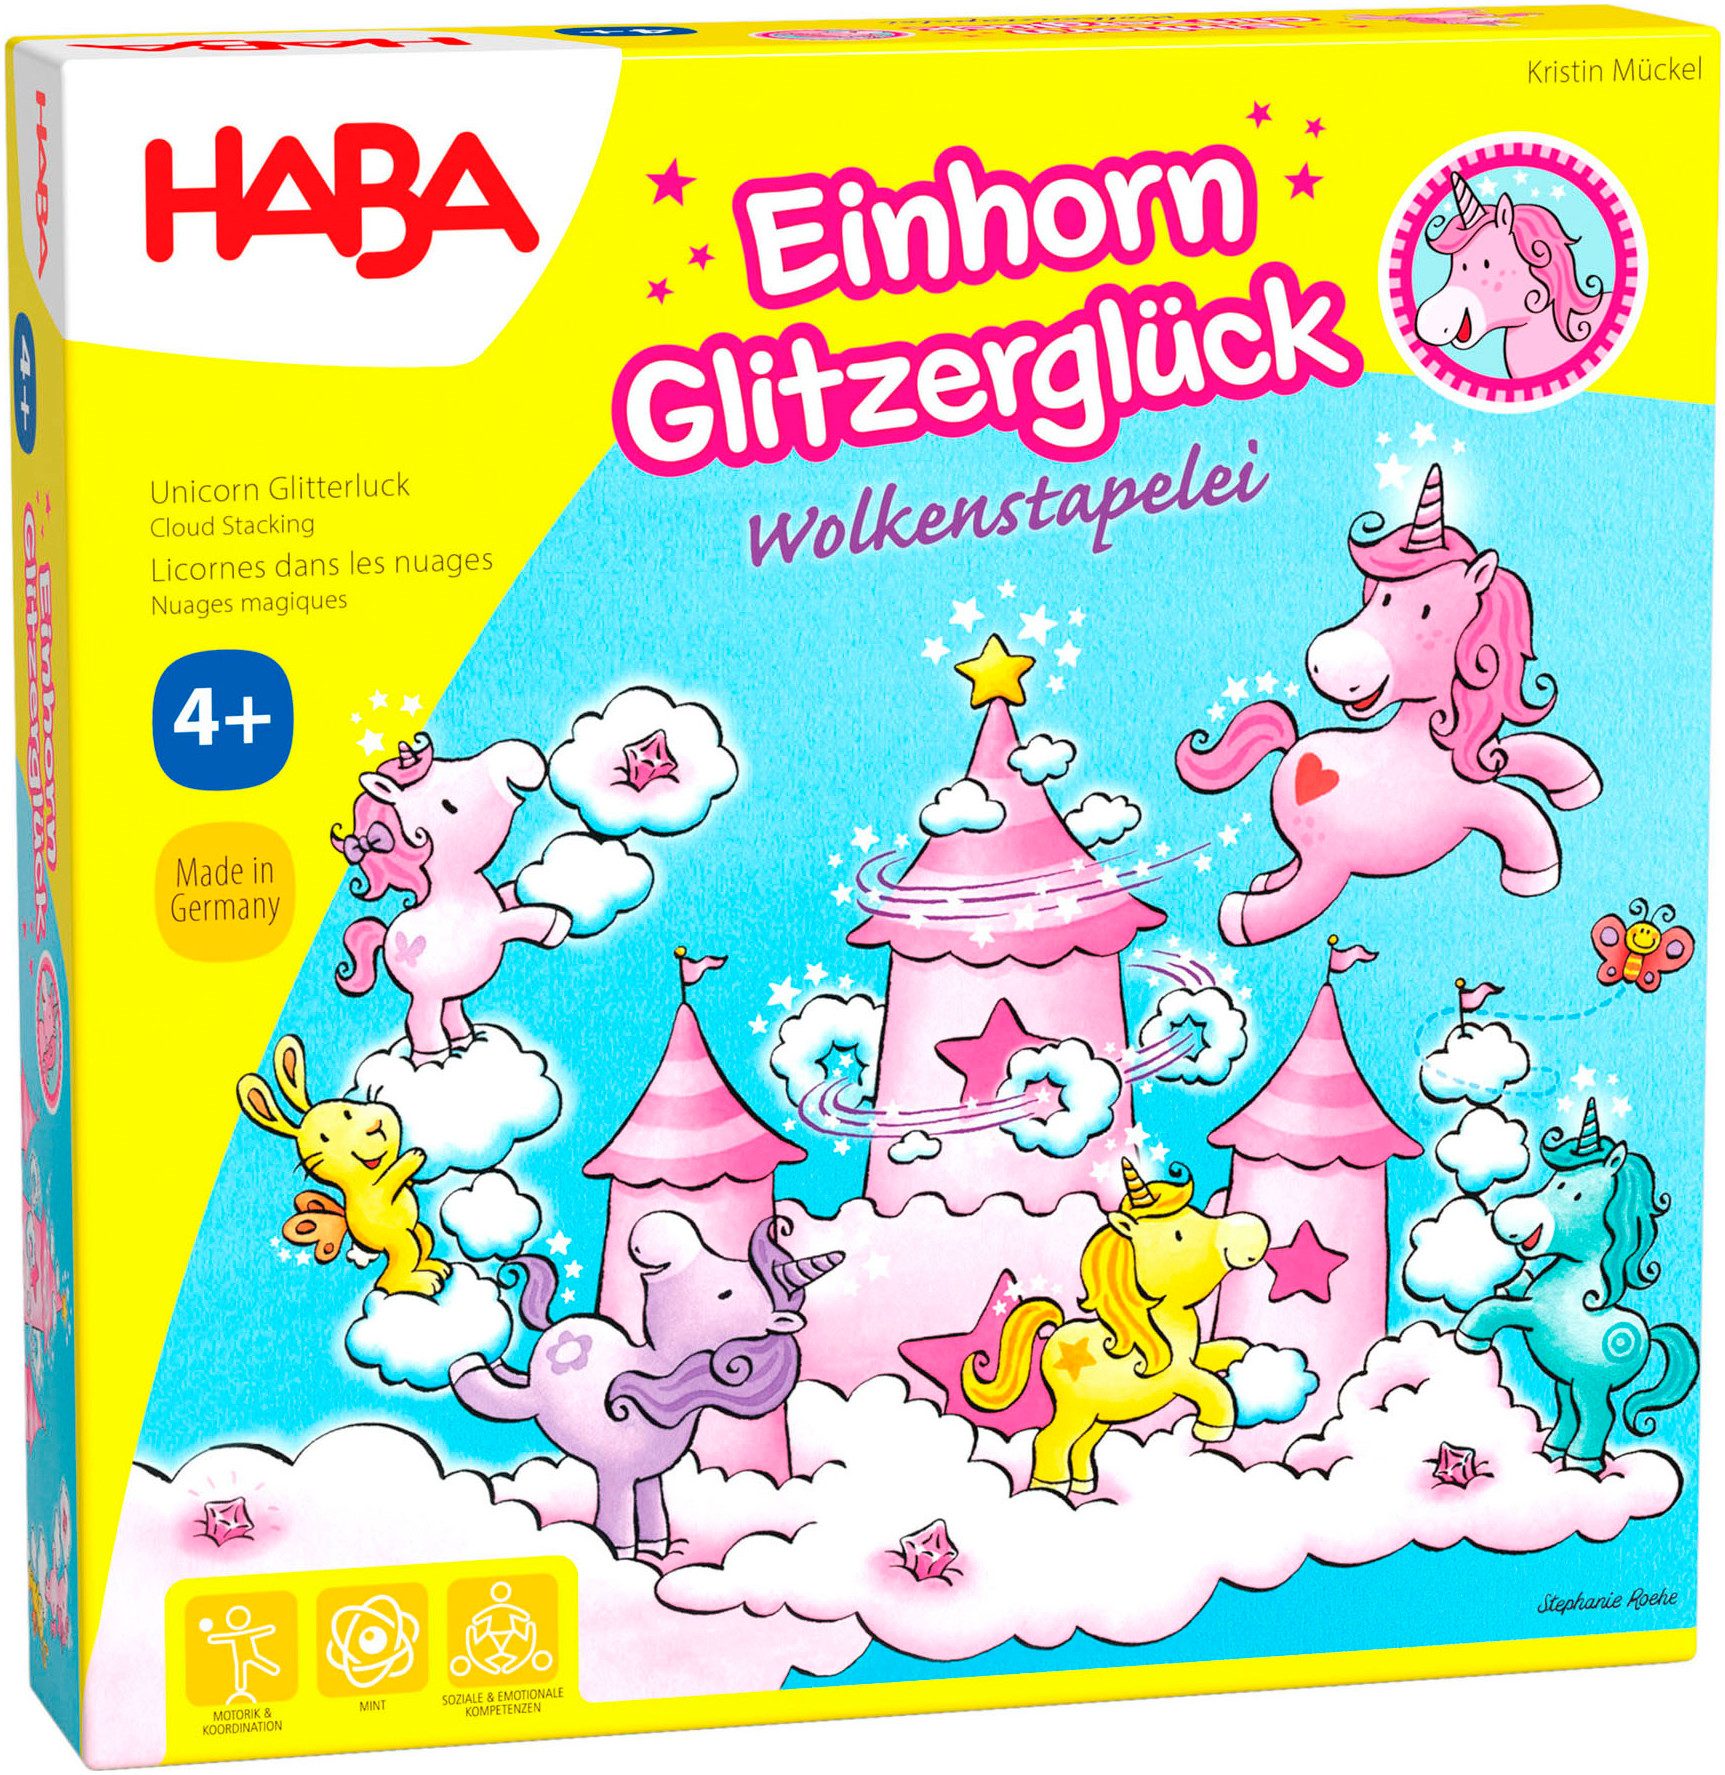 Haba Spiel, Einhorn Glitzerglück - Wolkenstapelei, Made in Germany